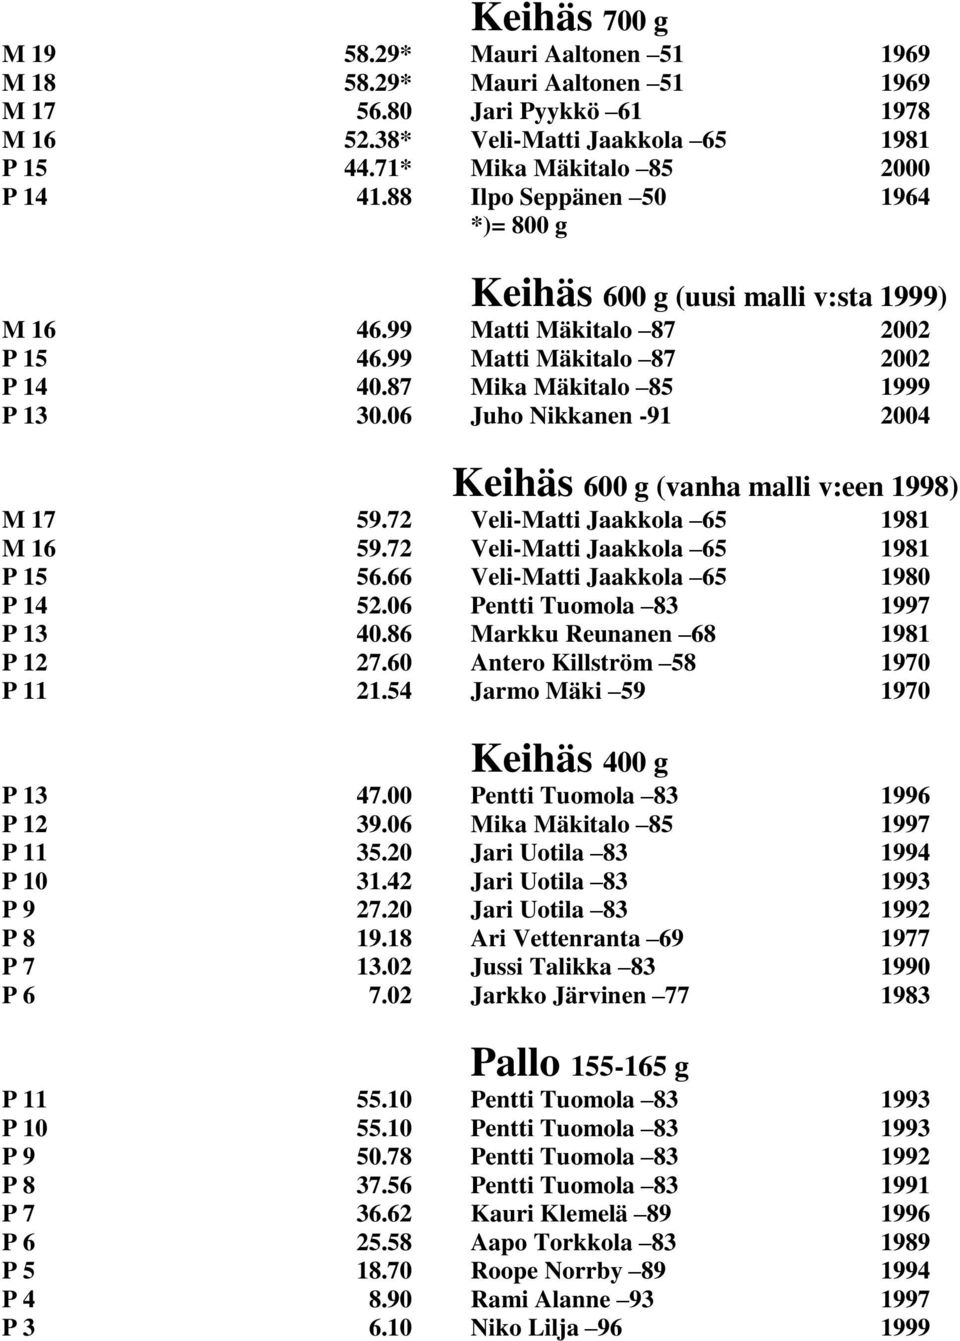 06 Juho Nikkanen -91 2004 Keihäs 600 g (vanha malli v:een 1998) M 17 59.72 Veli-Matti Jaakkola 65 1981 M 16 59.72 Veli-Matti Jaakkola 65 1981 P 15 56.66 Veli-Matti Jaakkola 65 1980 P 14 52.